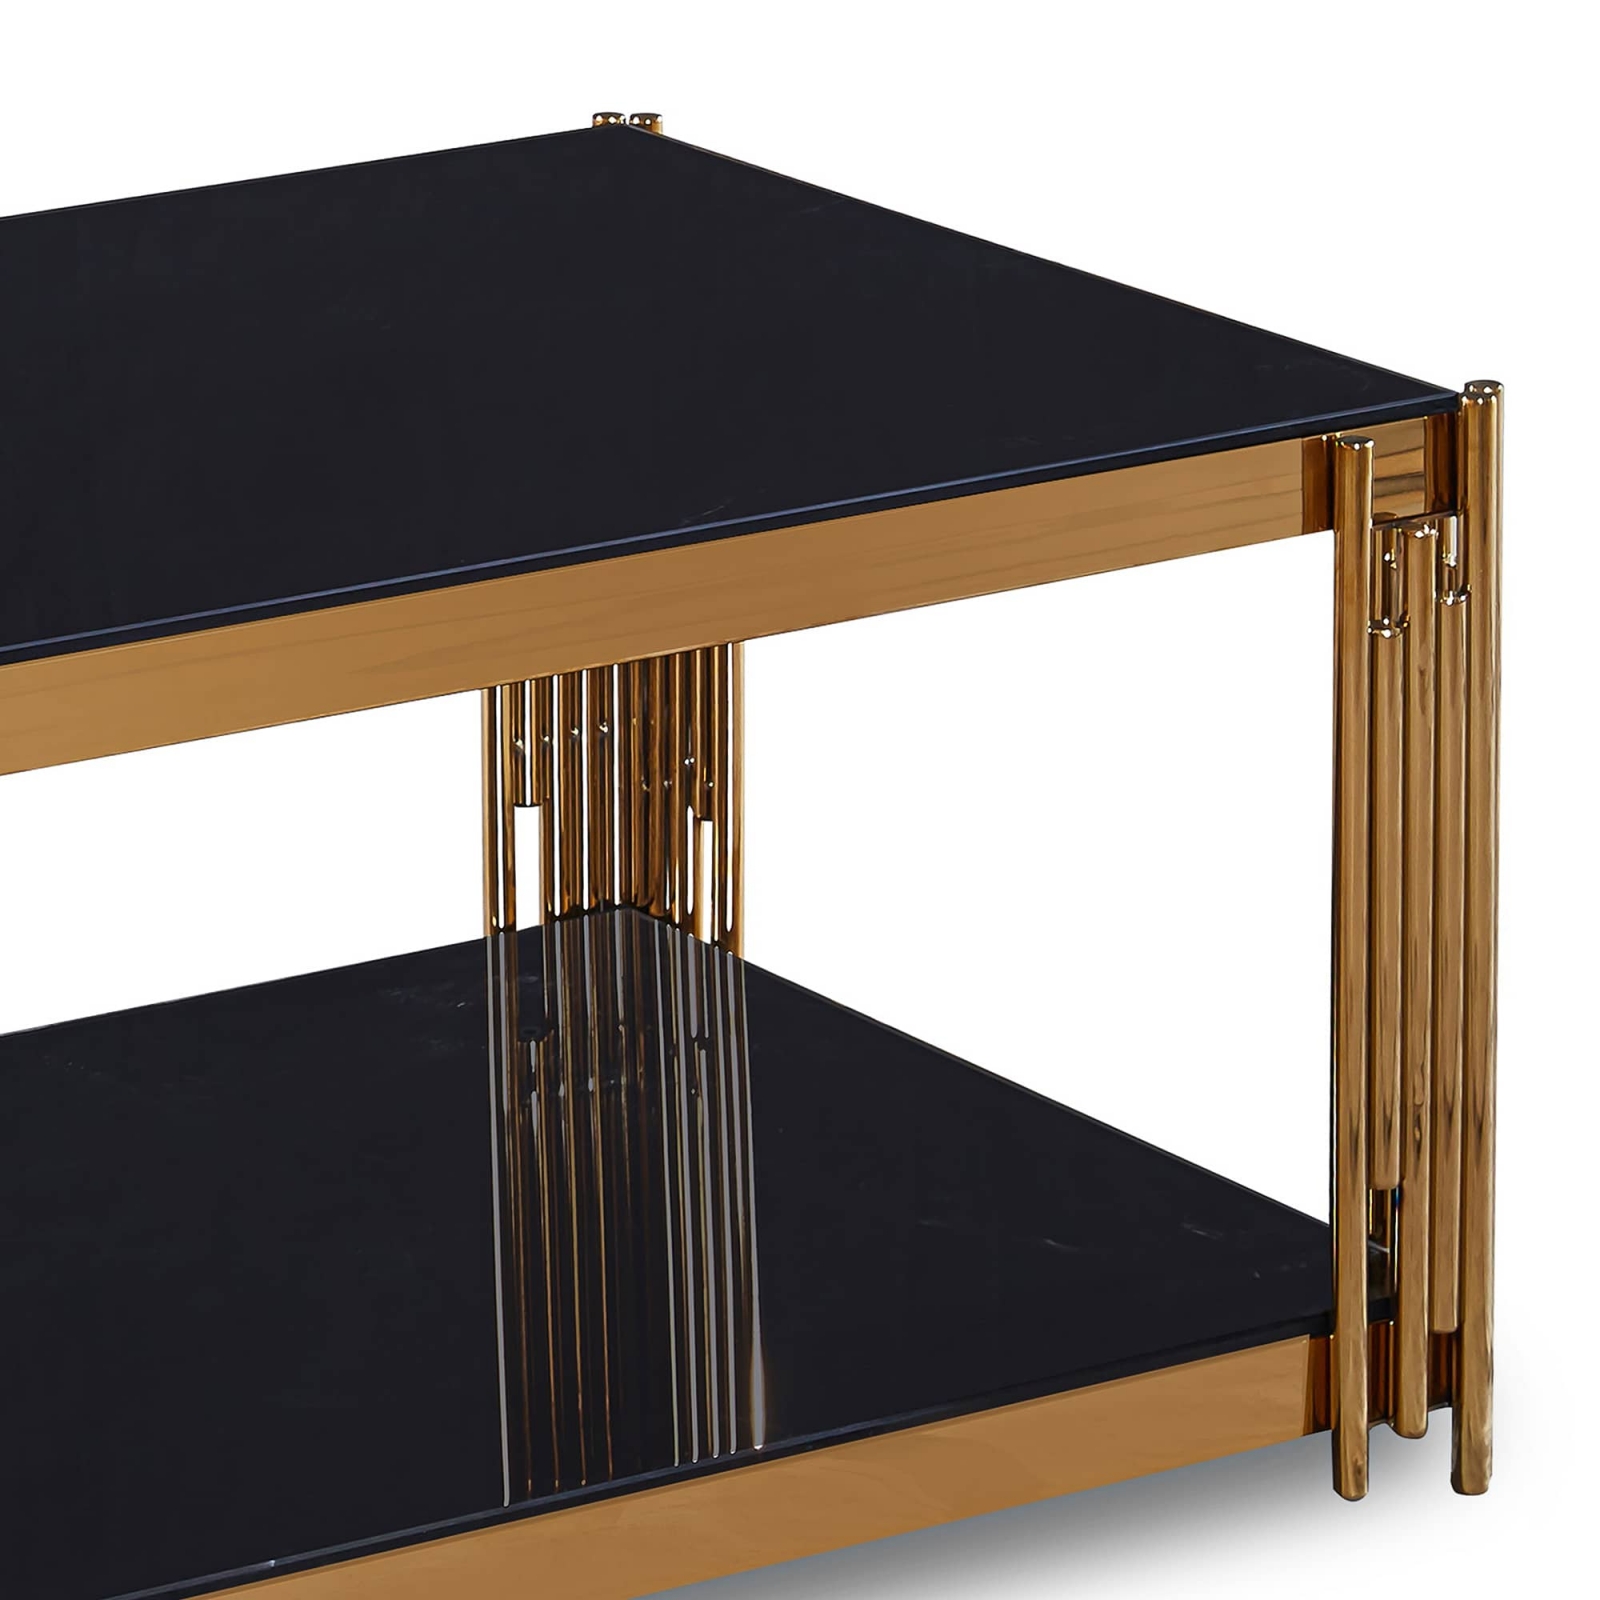 Table basse rectangle en verre trempé noir et pieds en métal doré